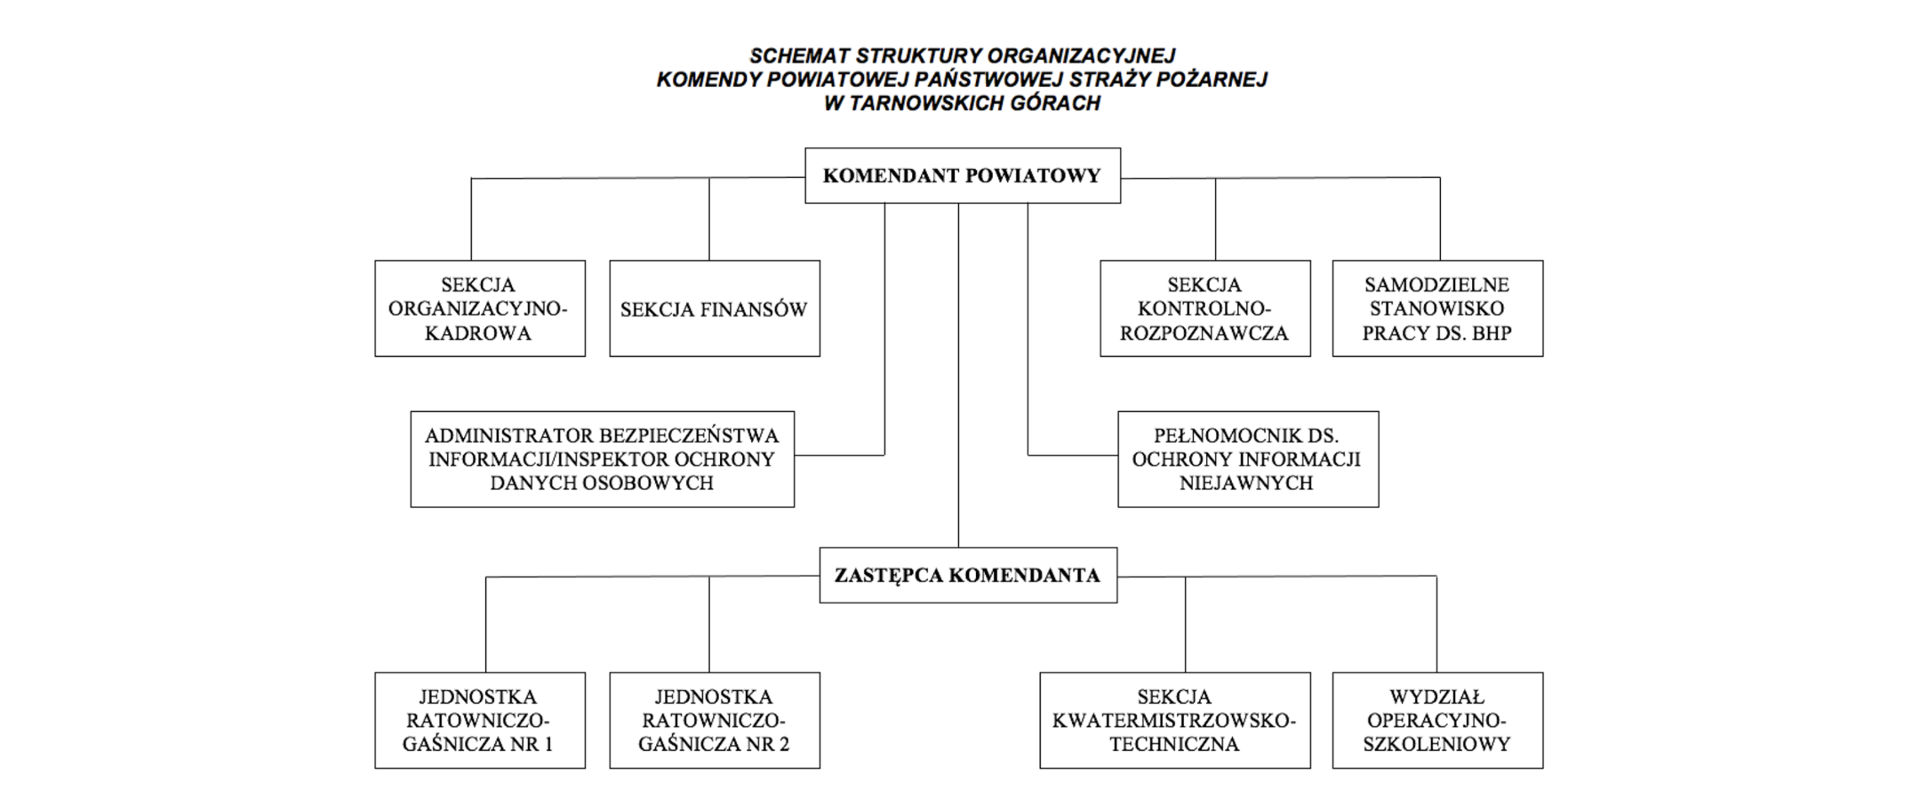 Schemat Struktury Organizacyjnej Komendy Powiatowej Państwowej Straży Pożarnej w Tarnowskich Górach